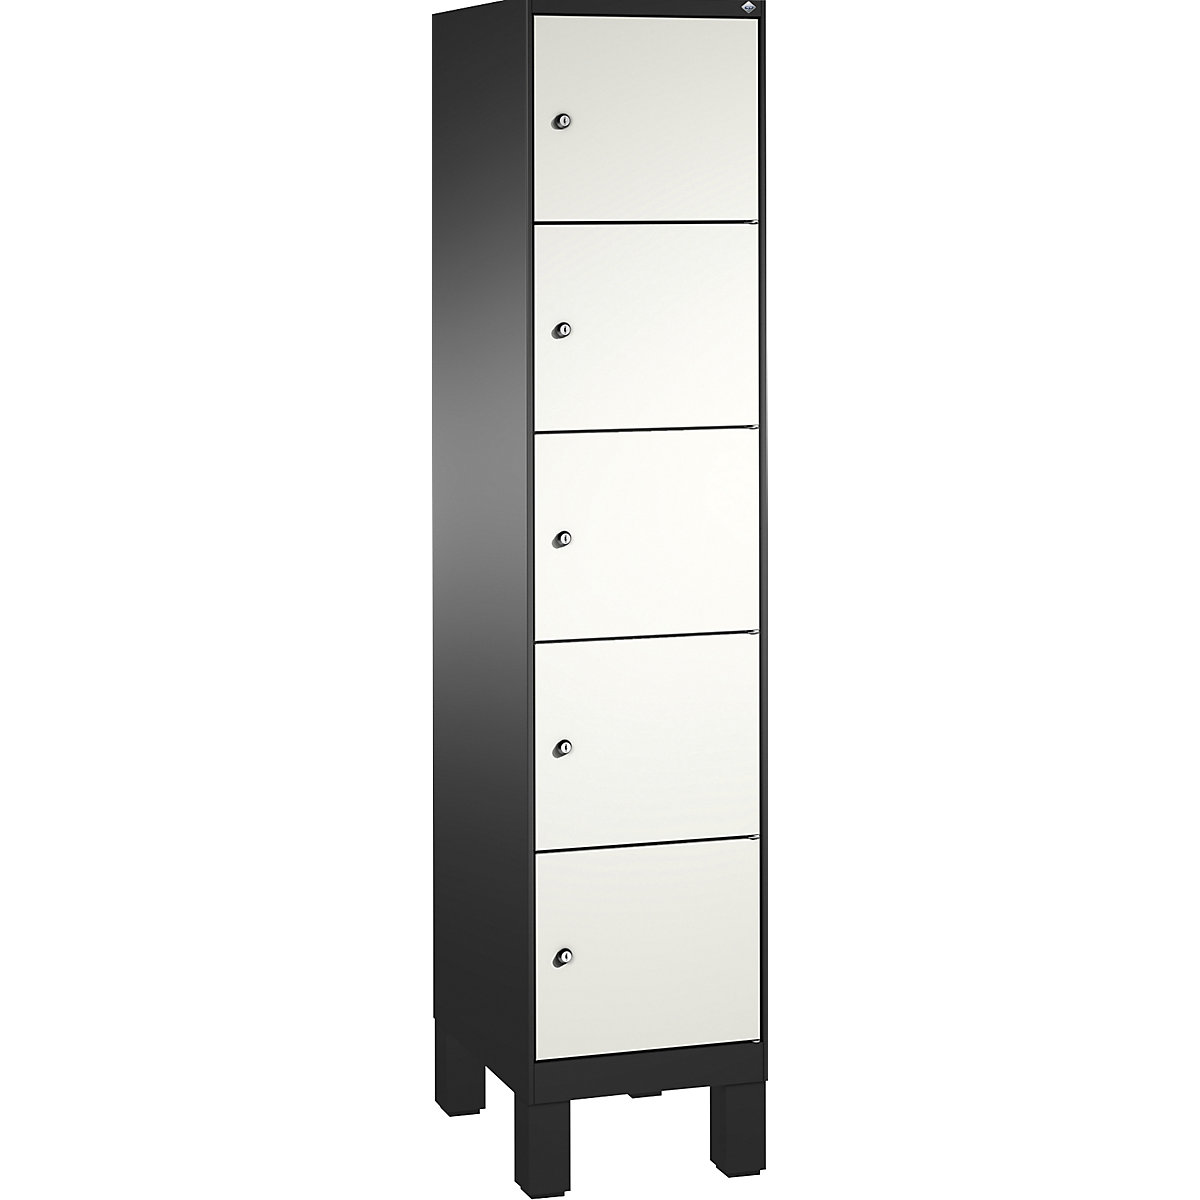 EVOLO locker unit, with feet – C+P, 1 compartment, 5 shelf compartments, compartment width 400 mm, black grey / traffic white-4